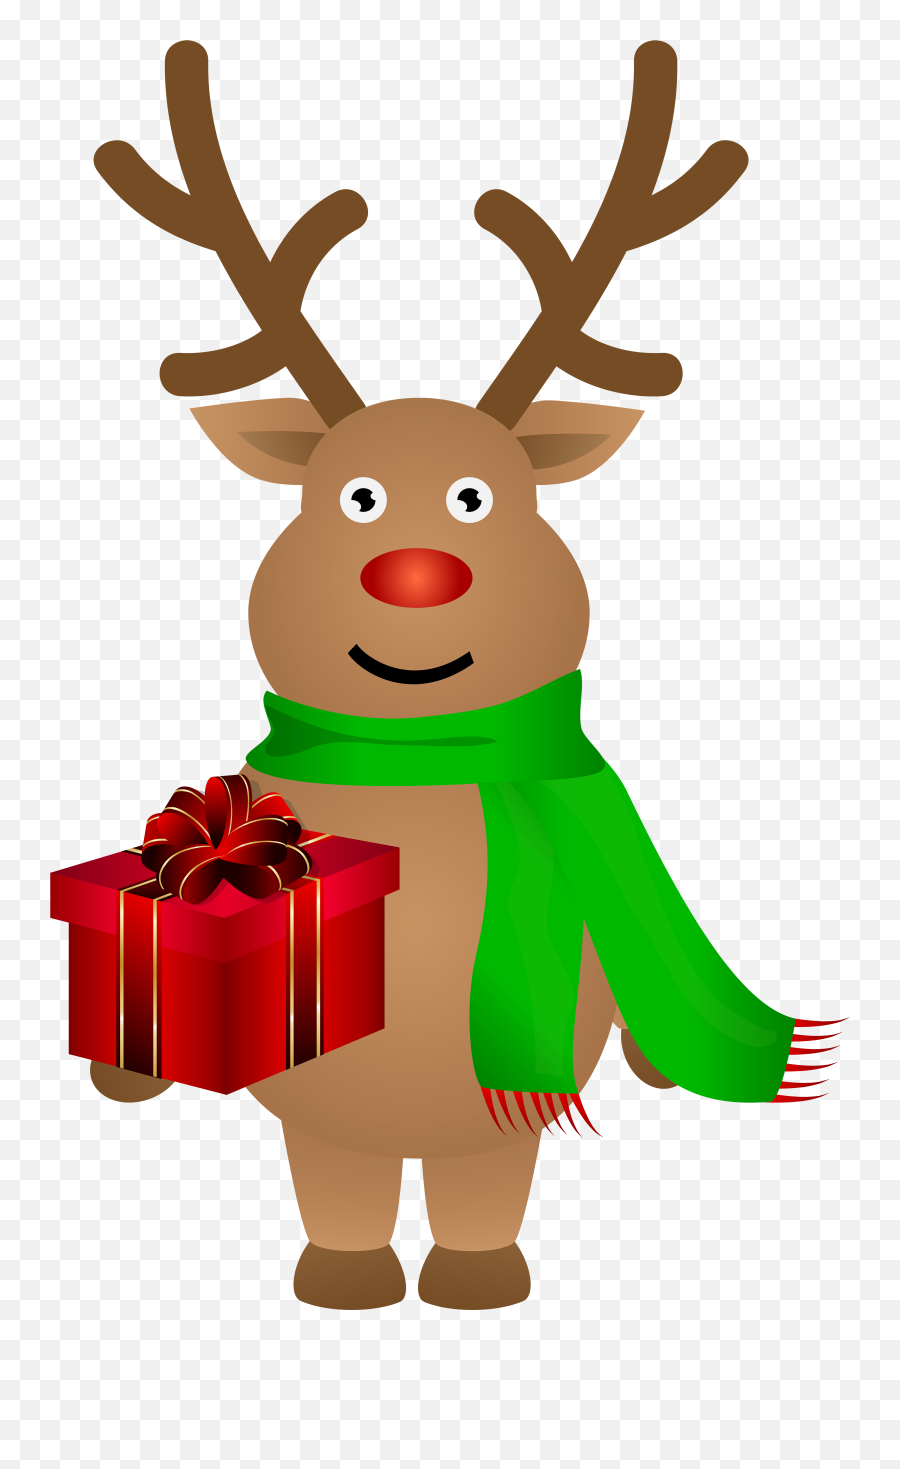 Library Of Reindeer Christmas Image - Christmas Reindeer Png Clipart Emoji,Cute Christmas Emojis